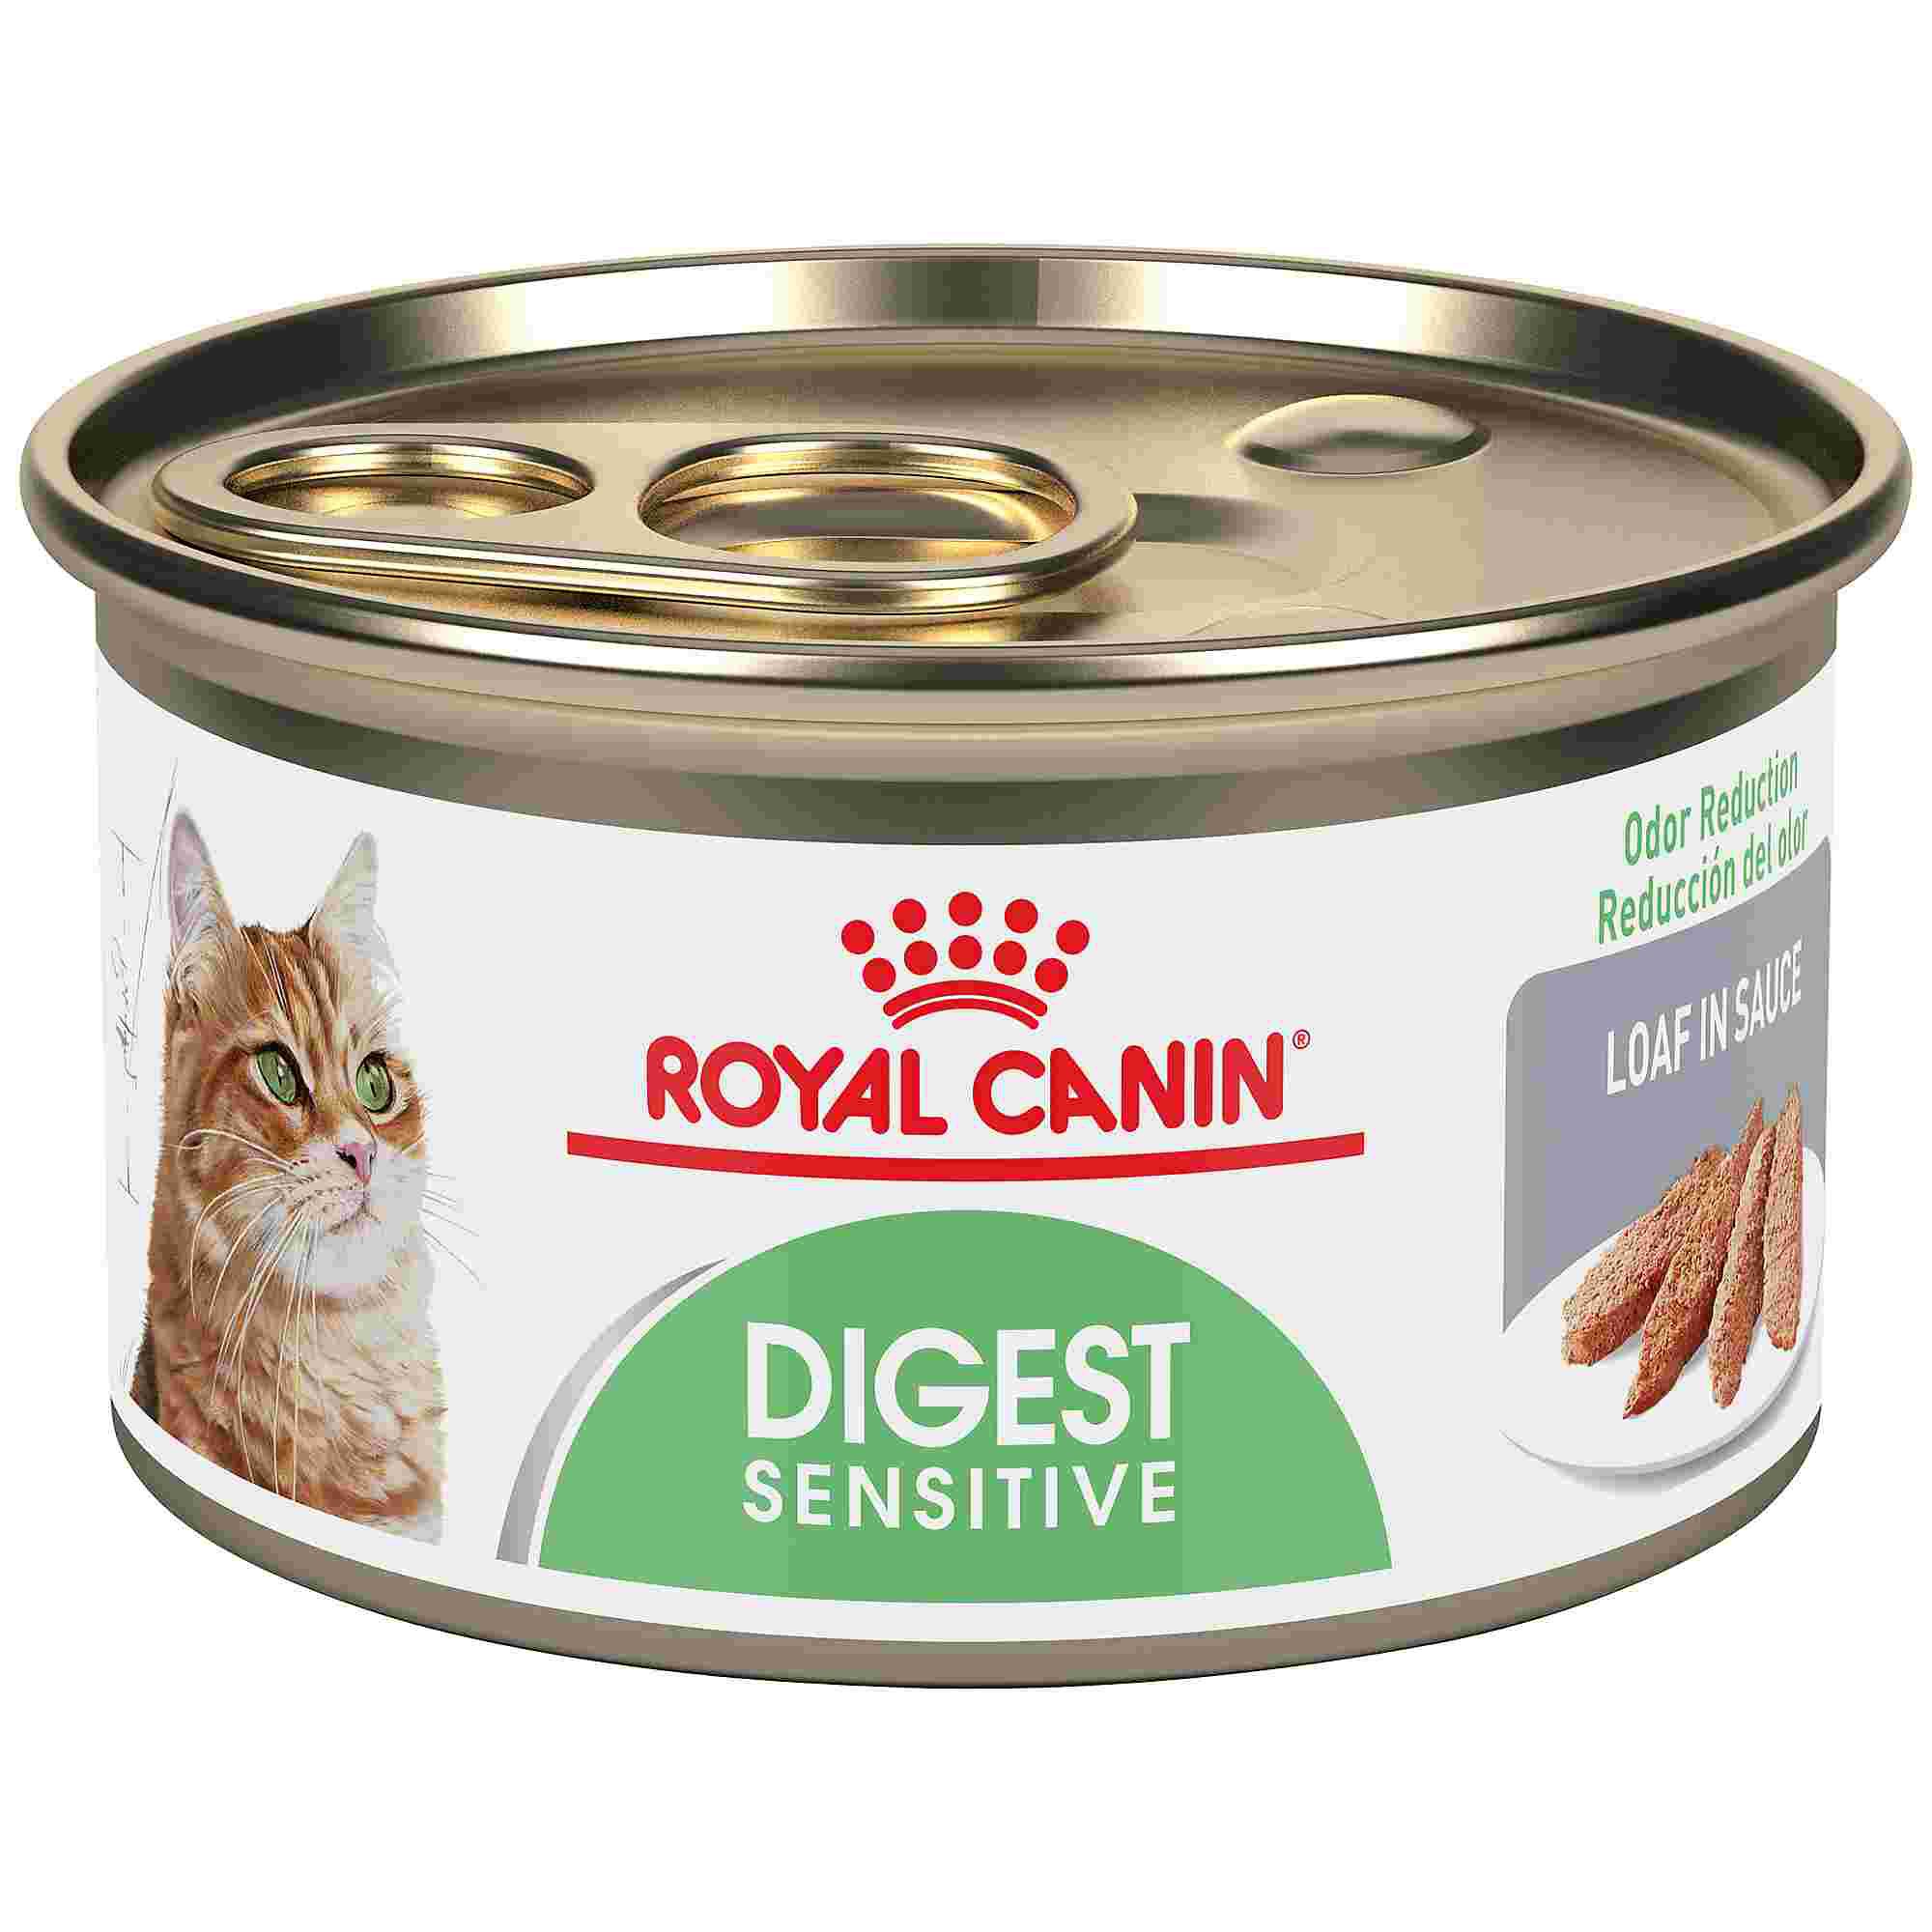 Royal Canin Feline Health Nutrition Digest Sensitive Loaf In Sauce Wet